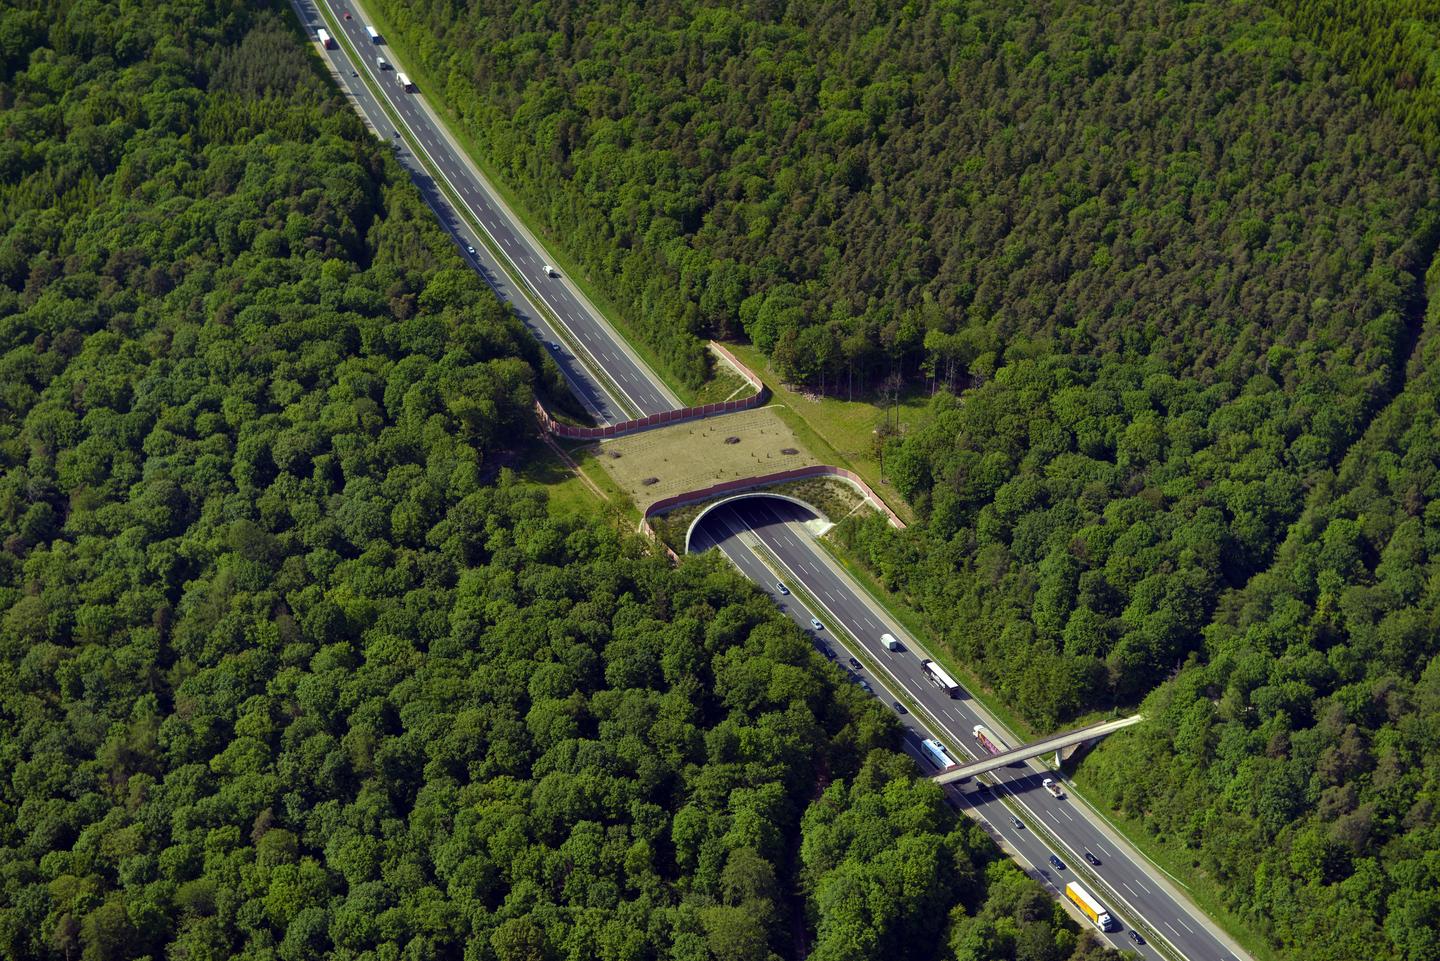 Vergleichbares Bauwerk einer fertiggestellten Grünbrücke (Foto: Hajo Dietz - Nürnberg Luftbild)